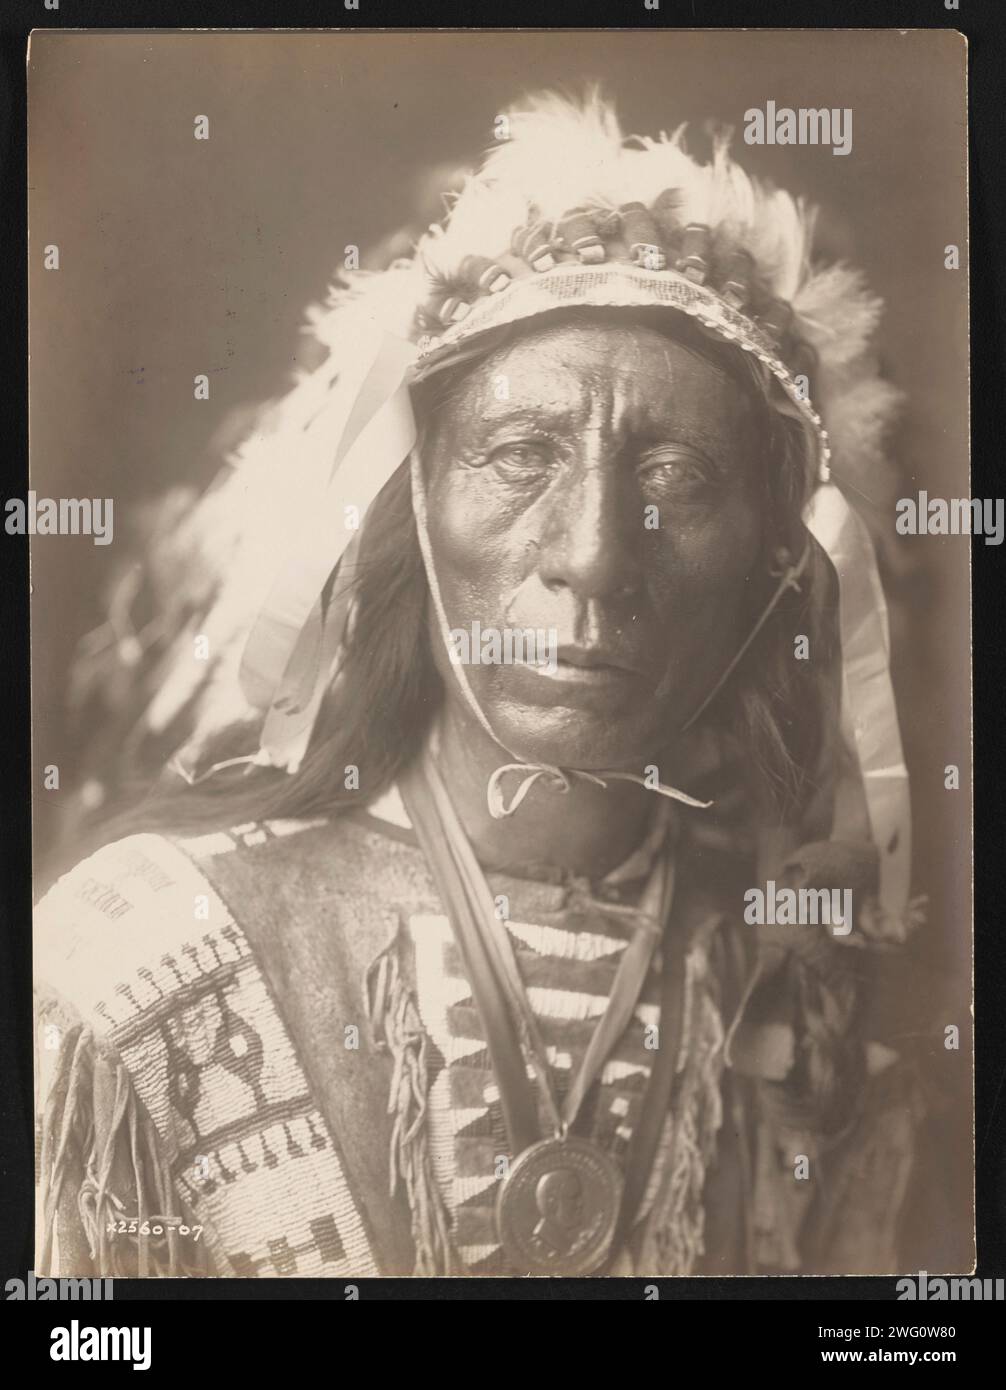 Jack Red Cloud, 1907. La photographie montre le portrait tête et épaules de Jack Red Cloud, debout, portant une coiffe complète, des vêtements traditionnels et un médaillon, face à l'avant. Banque D'Images